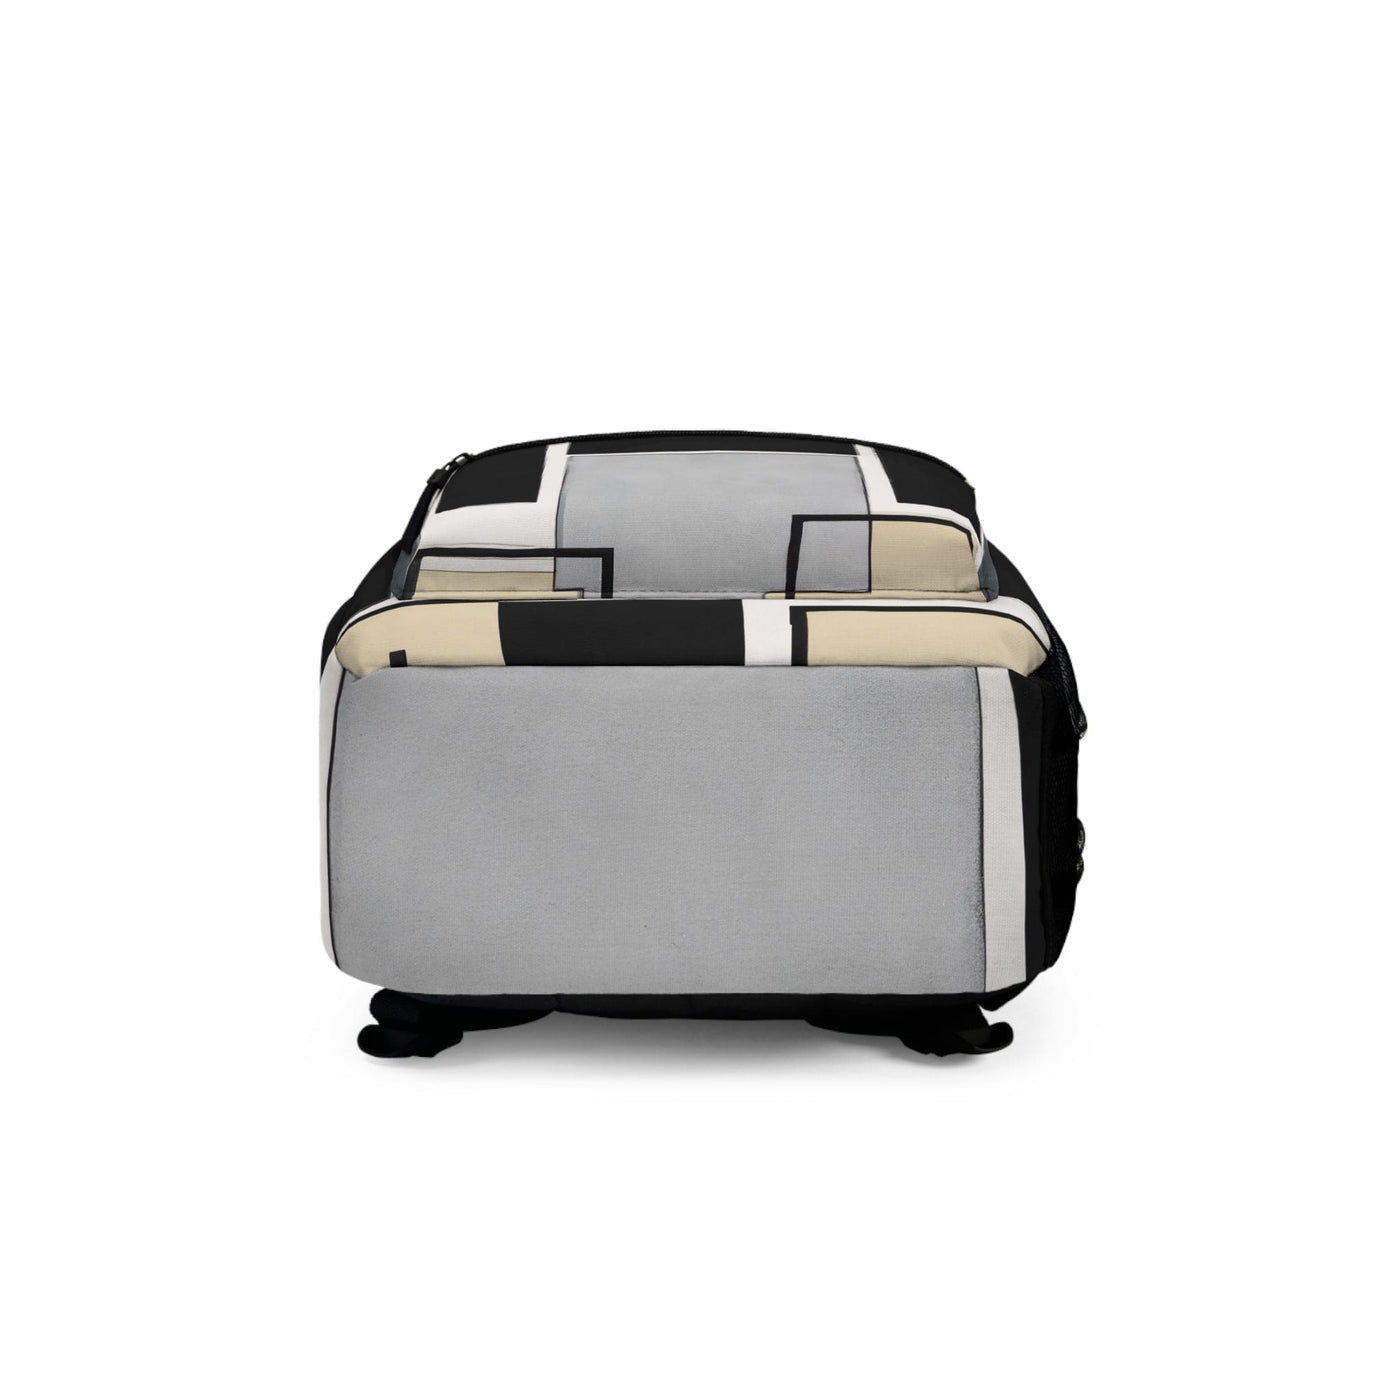 Backpack Work/school/leisure - Waterproof Abstract Black Grey Brown Geometric